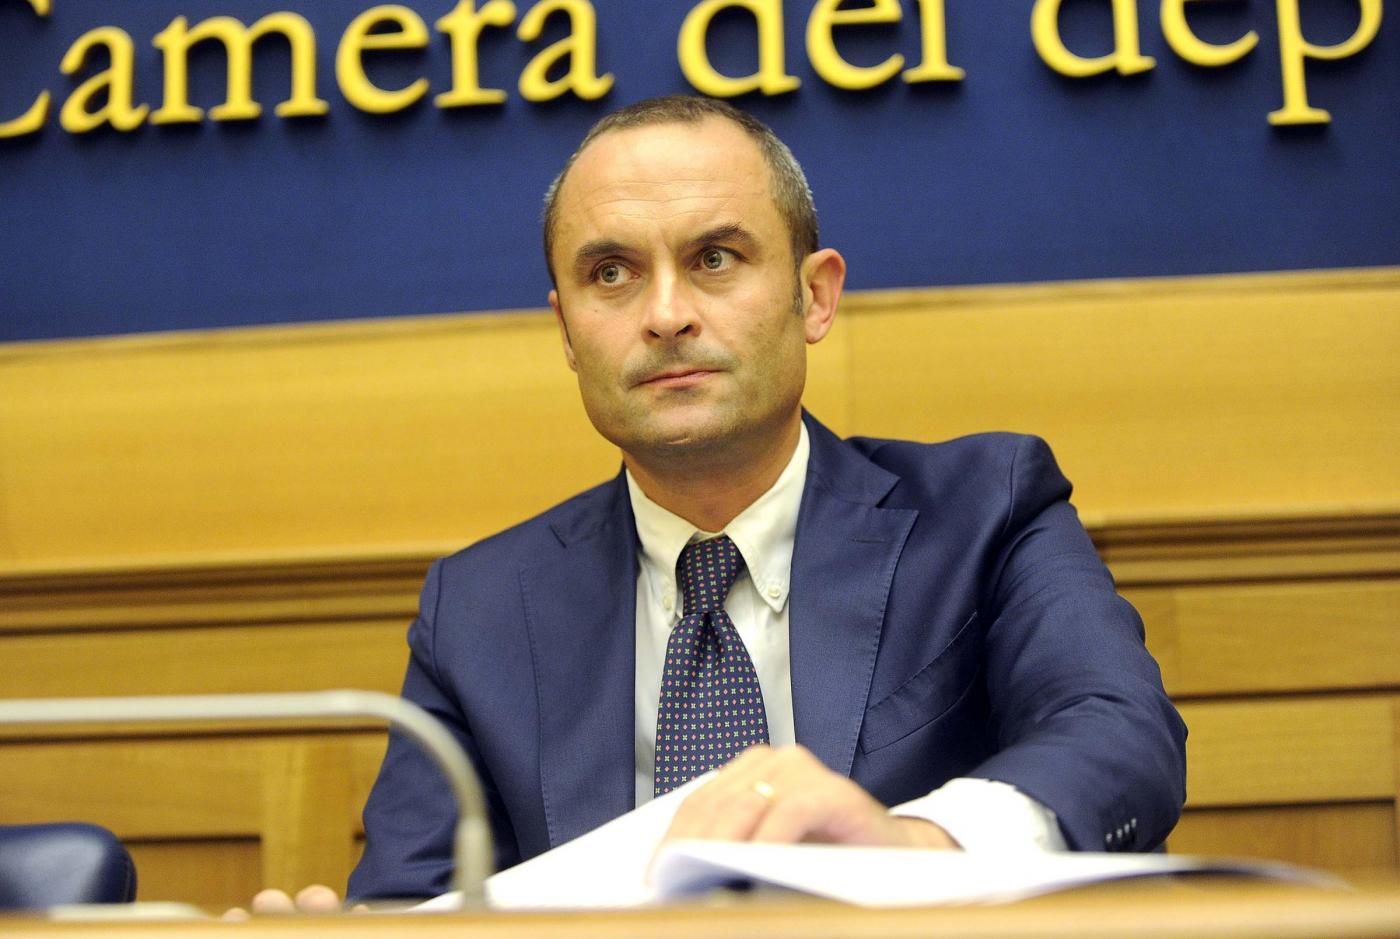 Chi è Enrico Costa, ministro degli Affari Regionali del Governo Gentiloni